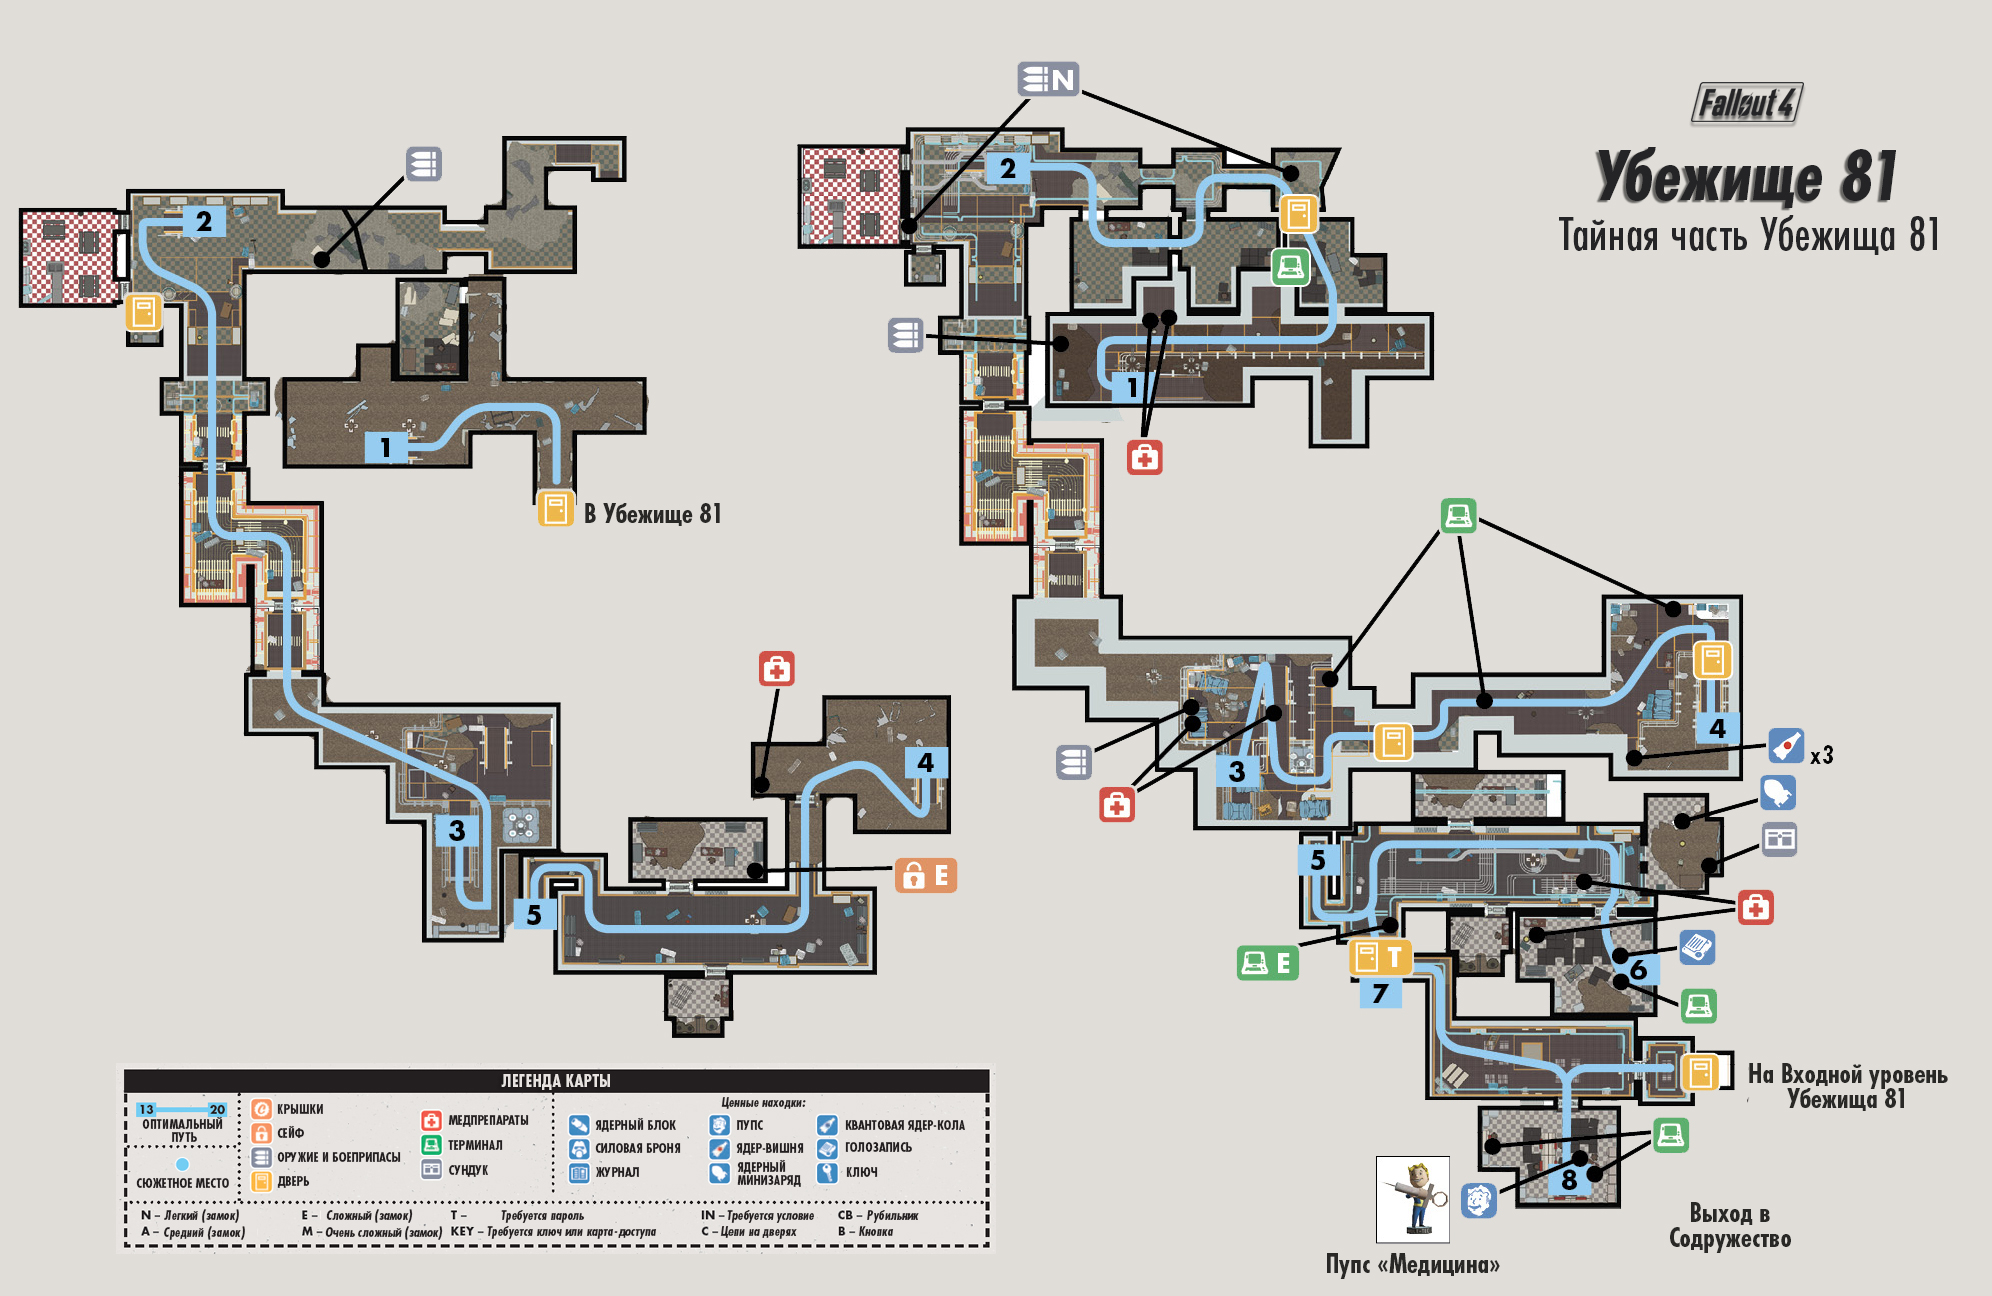 как найти убежище 75 в fallout 4 на карте фото 13